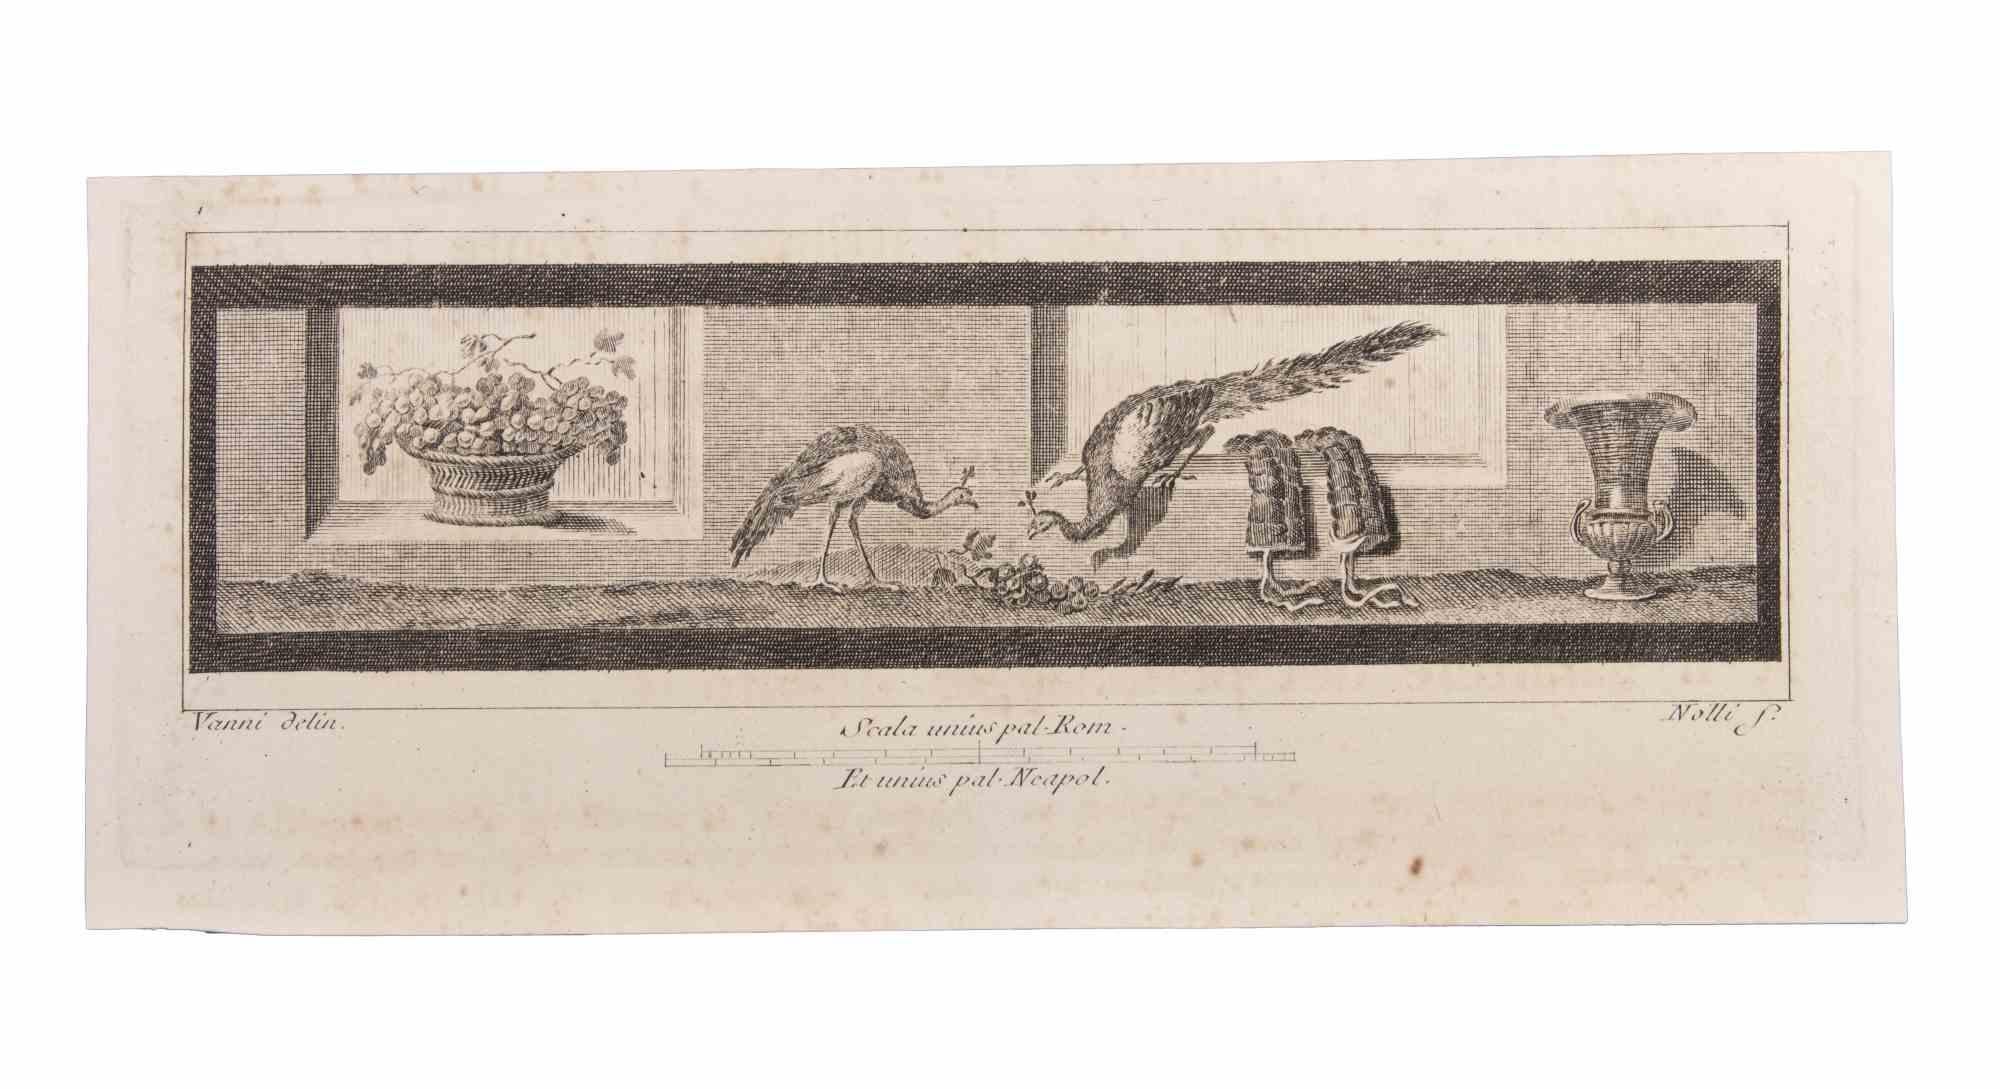 Décoration avec des animaux est une gravure réalisée par  Niccolò Vanni (1750-1770).

La gravure appartient à la suite d'estampes "Antiquités d'Herculanum exposées" (titre original : "Le Antichità di Ercolano Esposte"), un volume de huit gravures